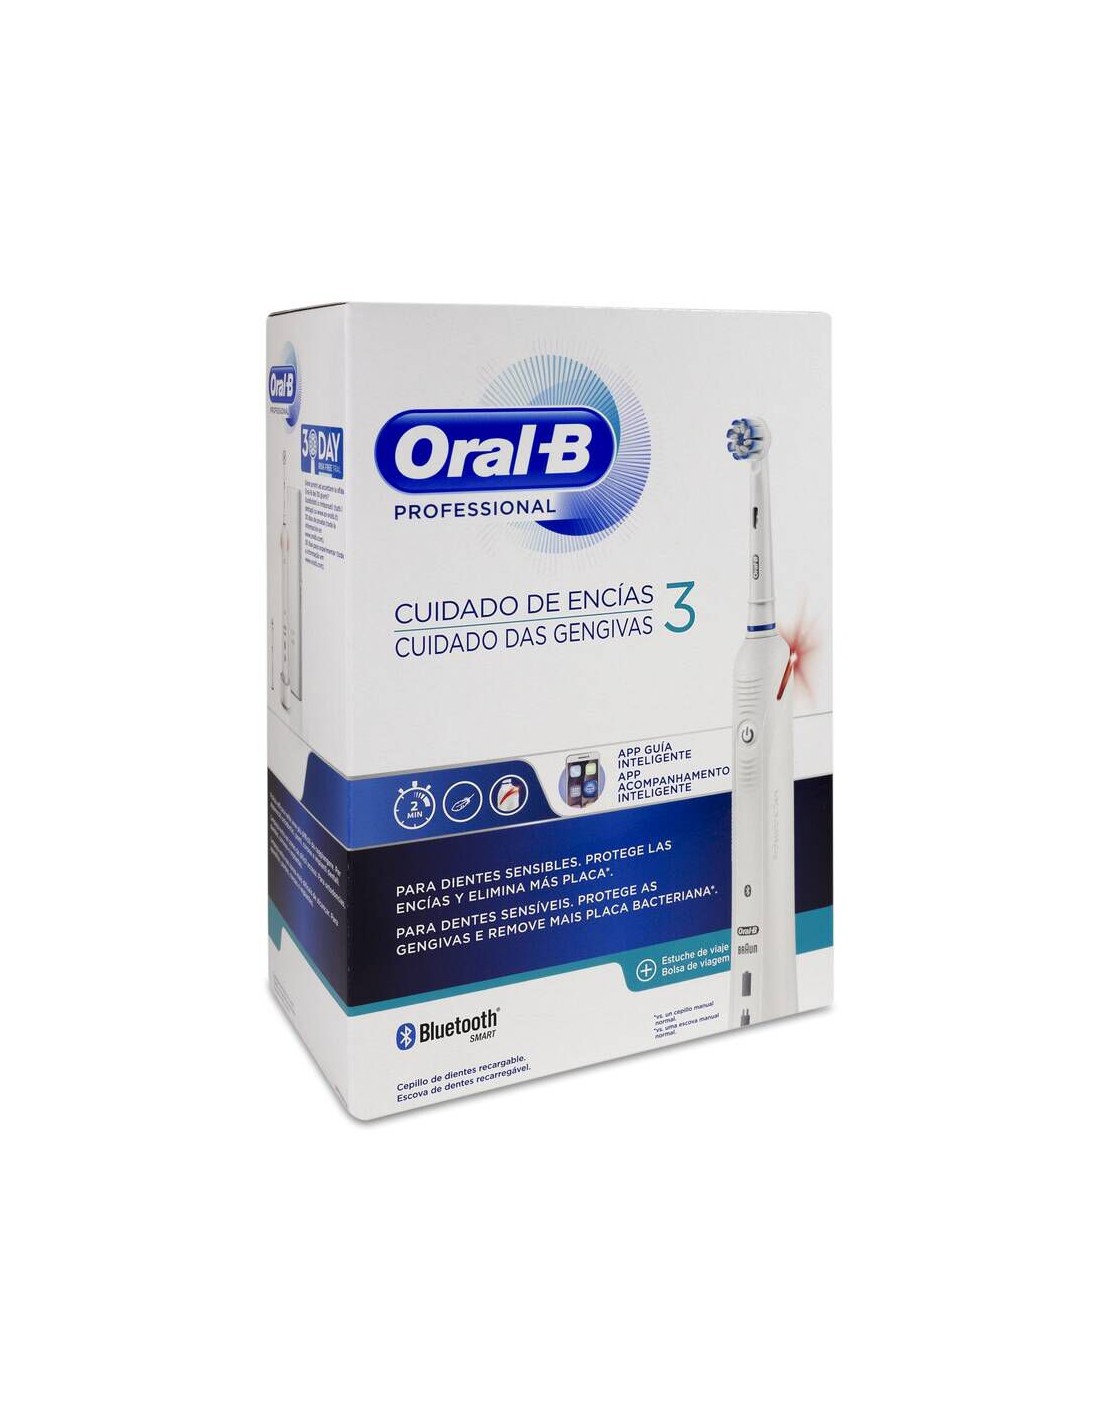 Cepillo Dental Eléctrico Oral-B Laboratory Limpieza Profesional 1